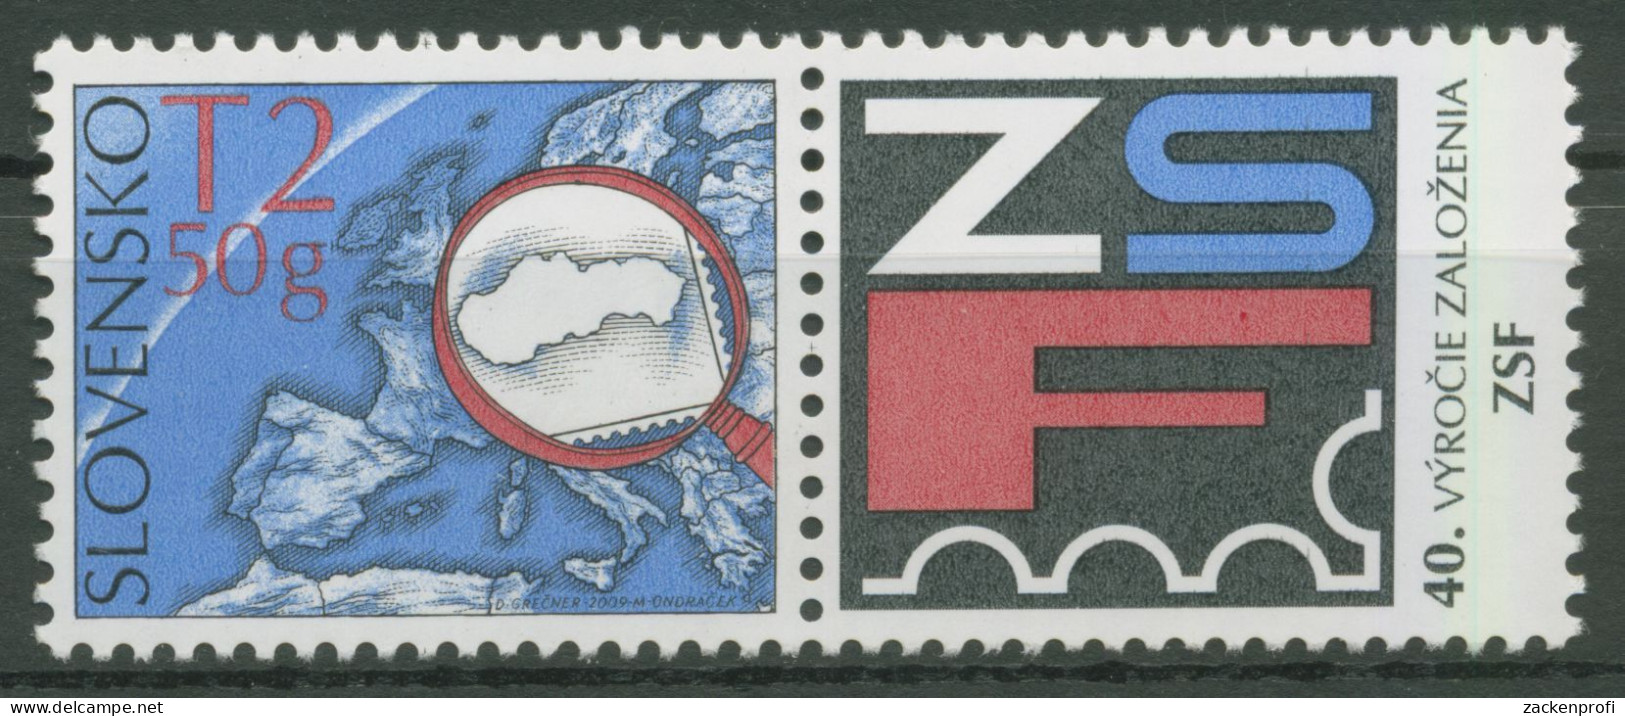 Slowakei 2009 Philatelistenverband 613 Zf Postfrisch - Ungebraucht